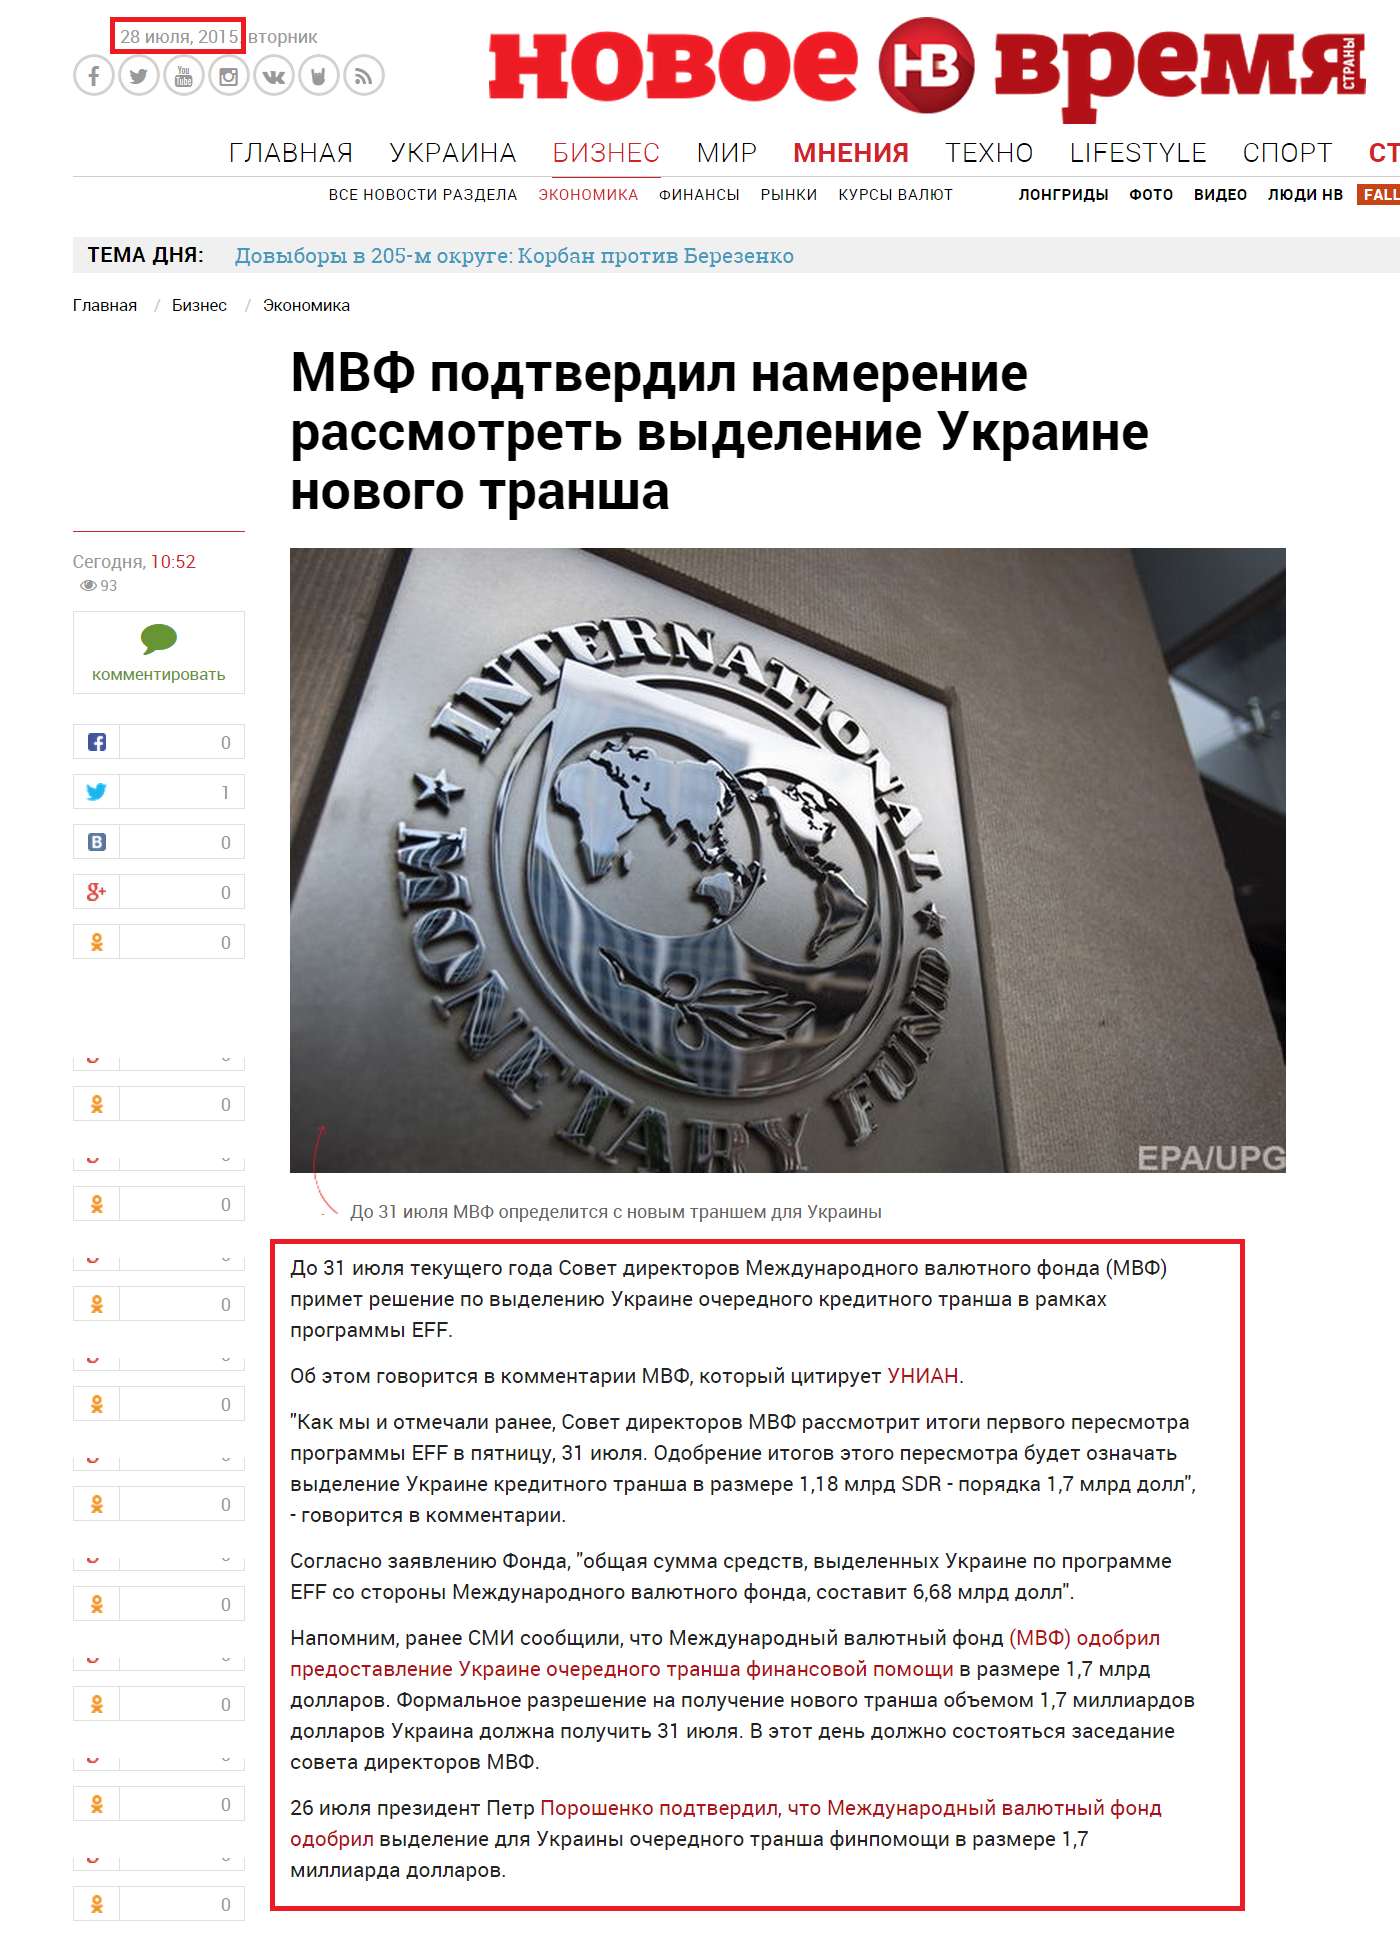 http://nv.ua/business/economics/mvf-podtverdil-namerenie-rassmotret-vydelenie-ukraine-novogo-transha-61239.html